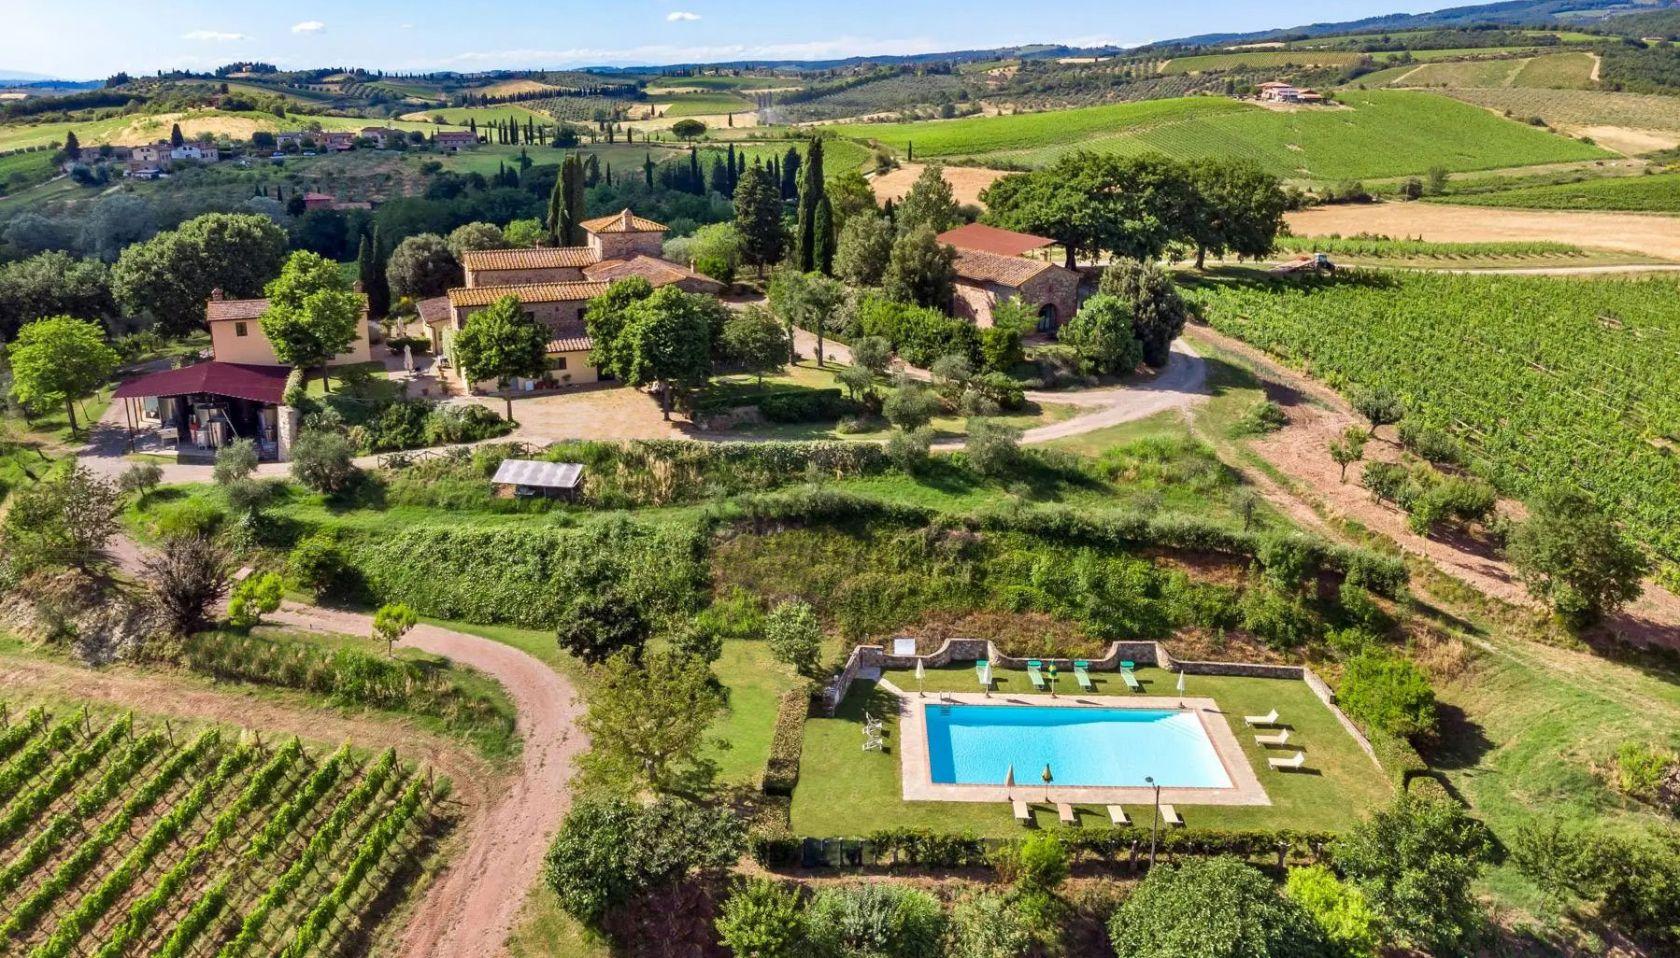 Toscana Immobiliare - Chianti farm for sale with Chianti wine production